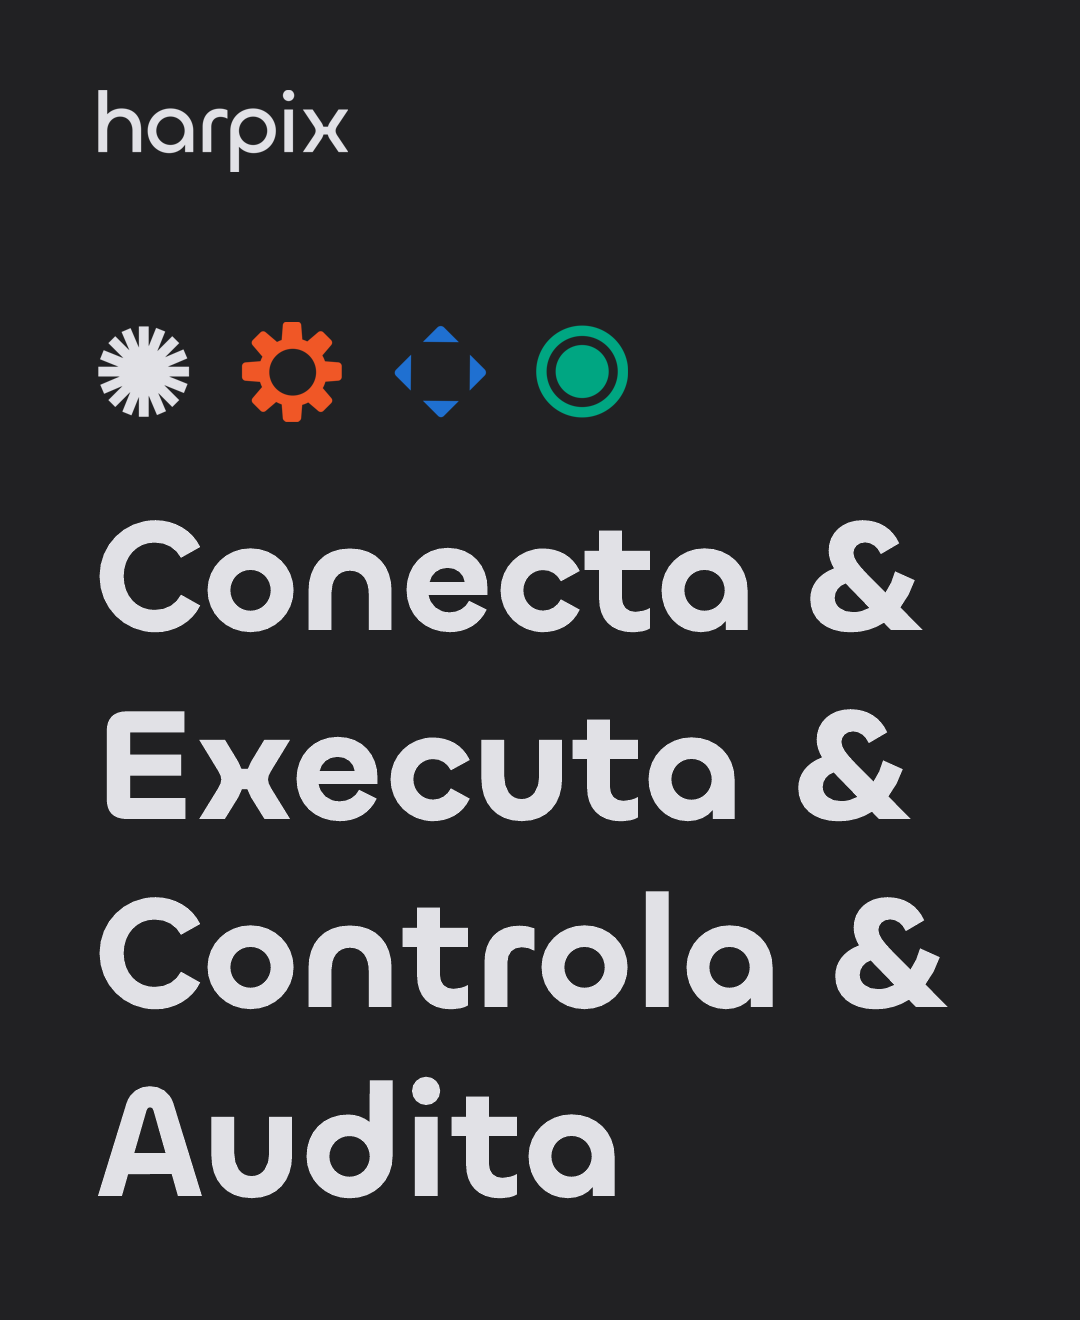 Harpix conecta, executa, controla e audita